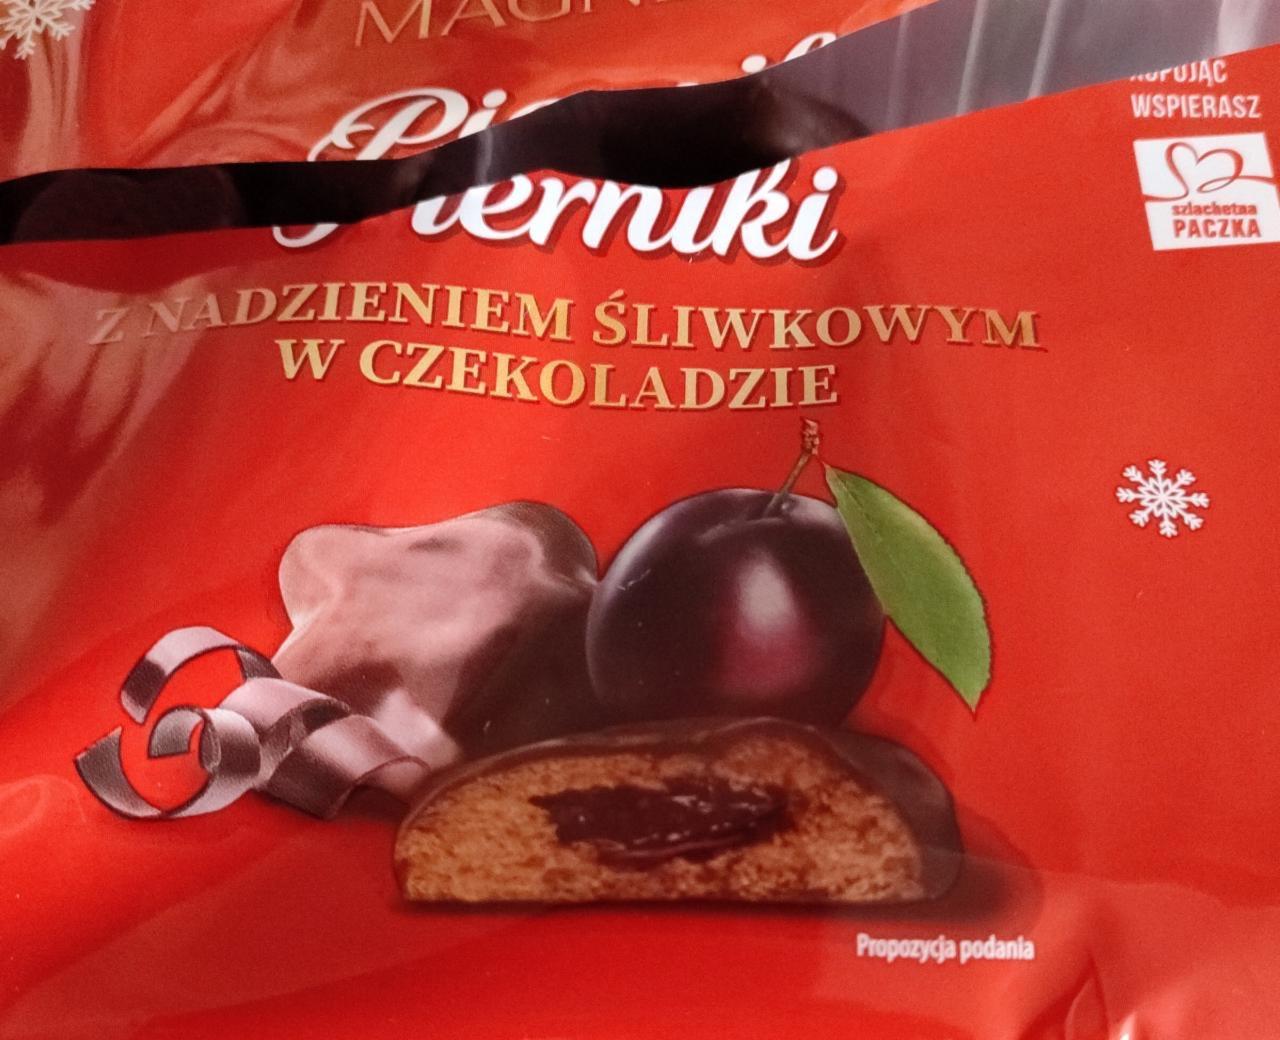 Fotografie - Perníku z nadzieniem śliwkowym w czekoladzie, Magnetic 